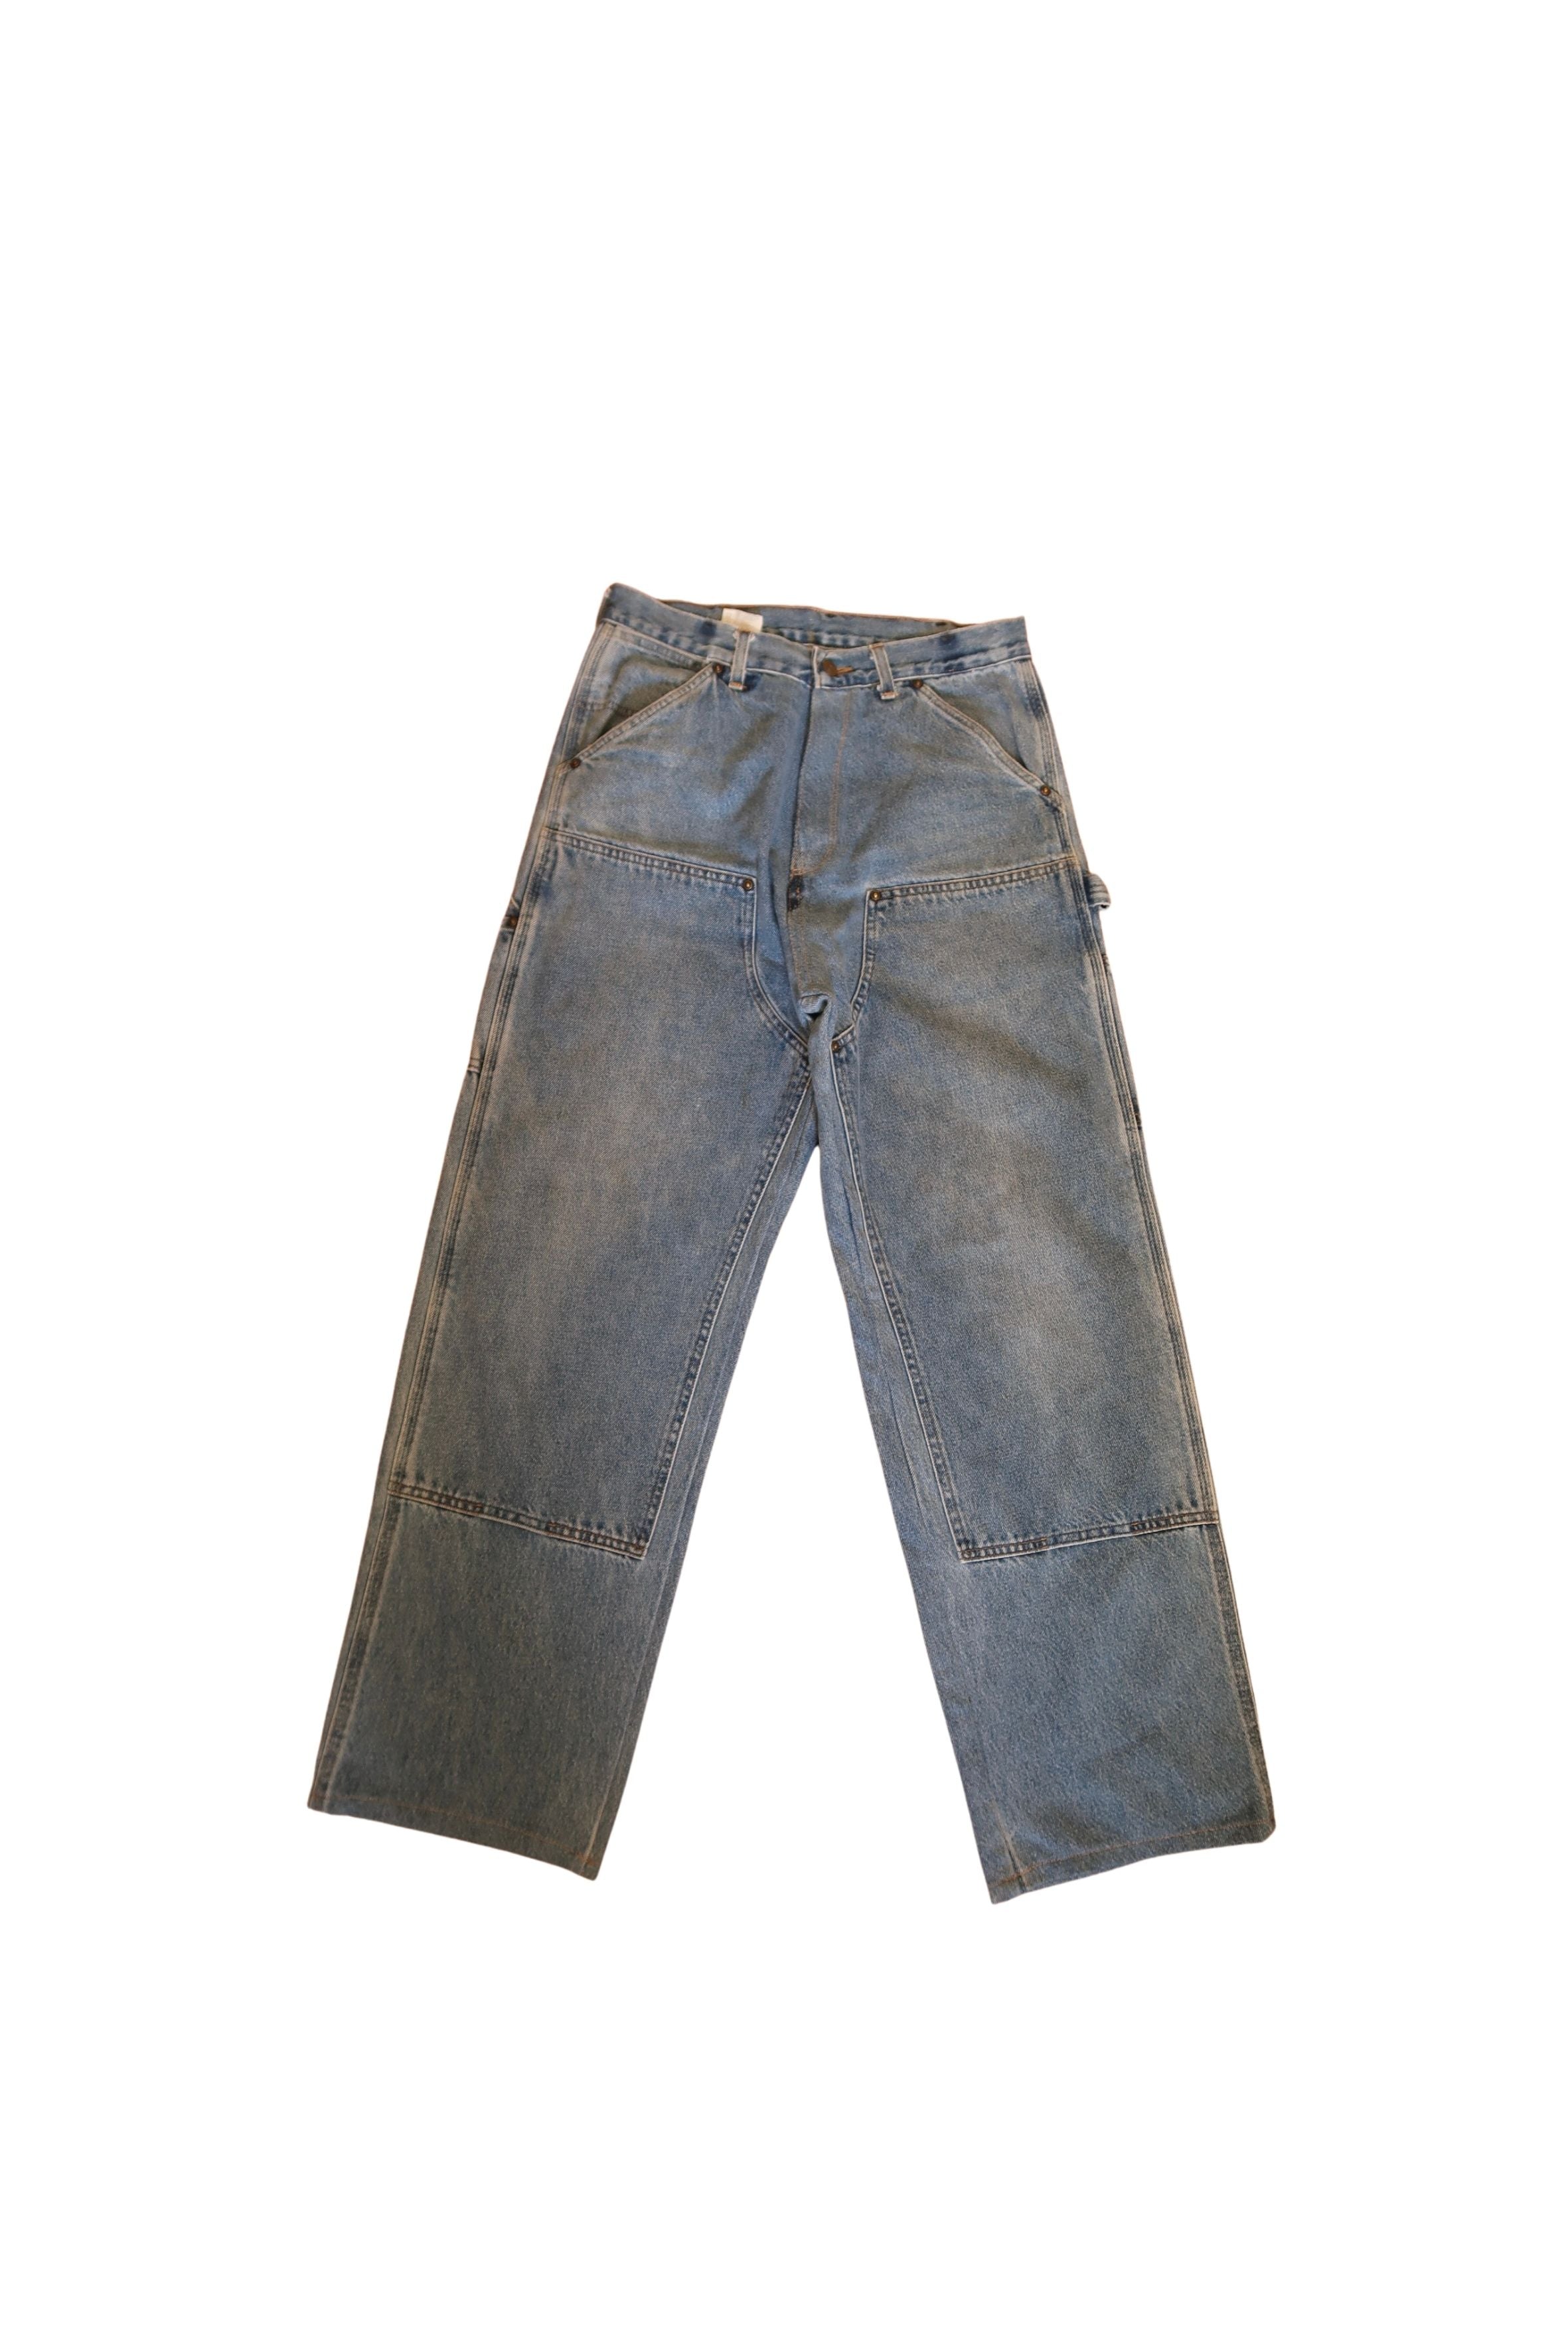 Vintage Carhartt Double Knee Denim Carpenter Pants Size: 30 X 32